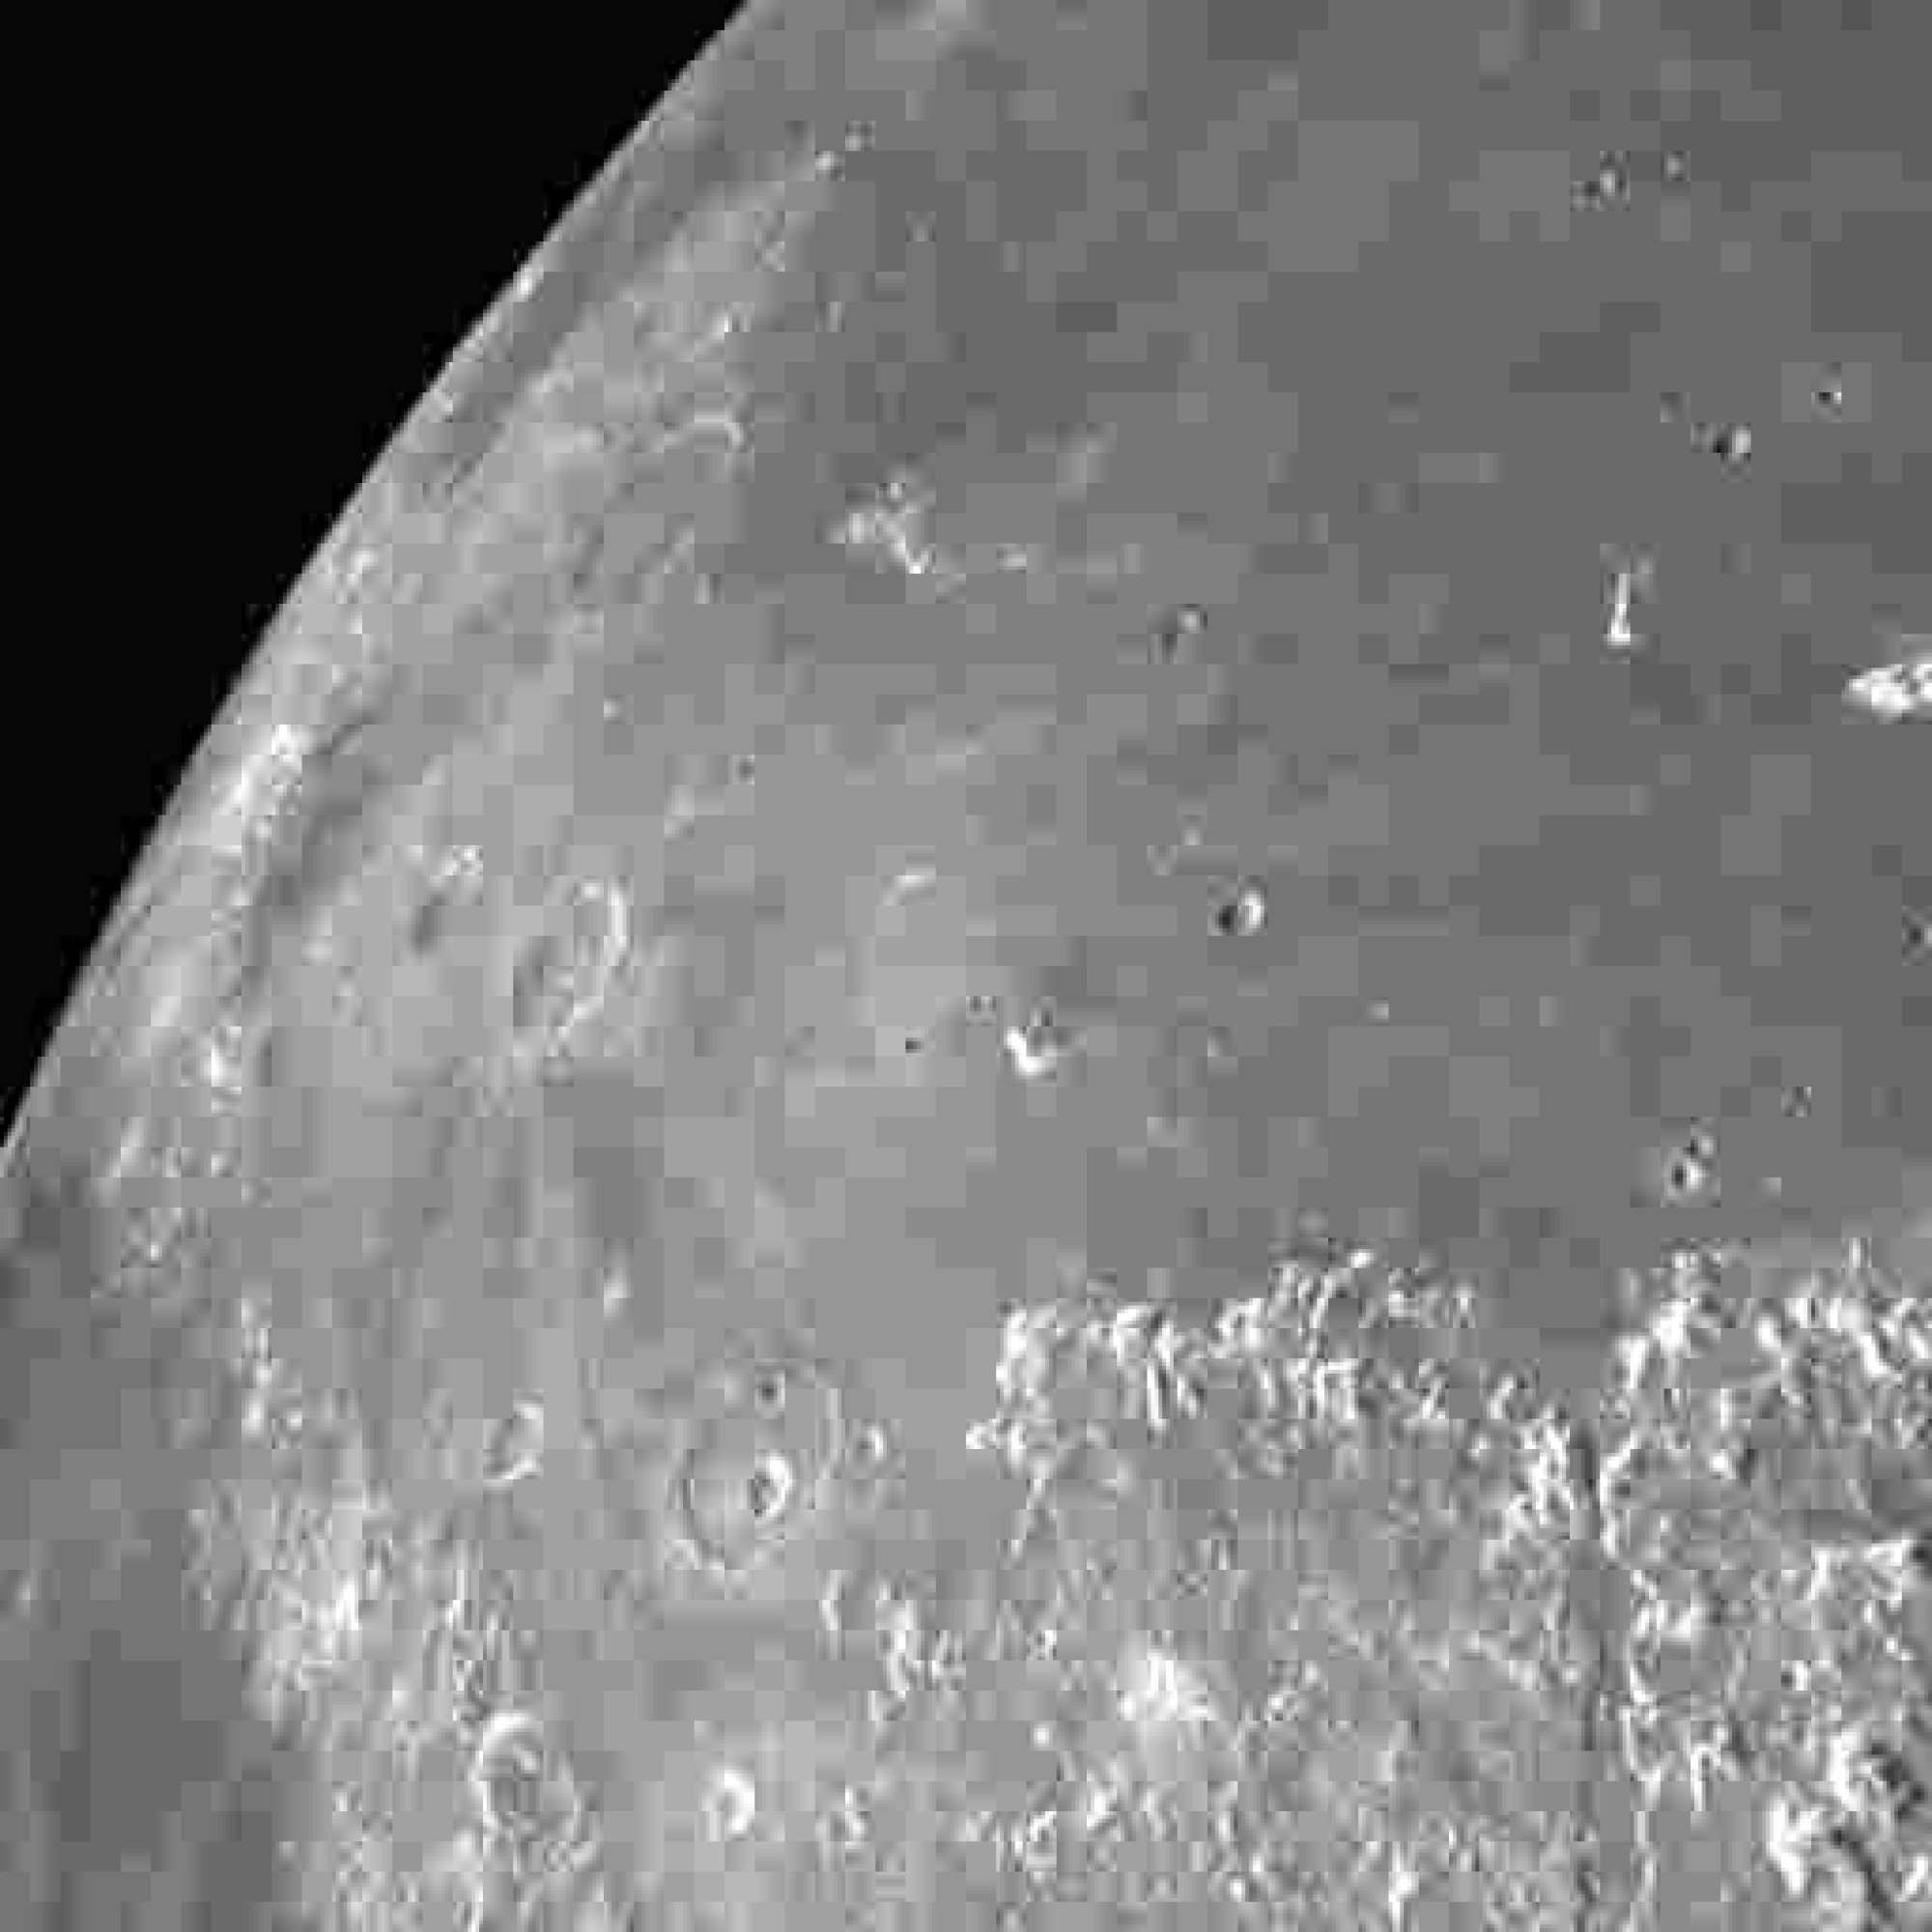 JAXA's spacecraft orbiting the moon